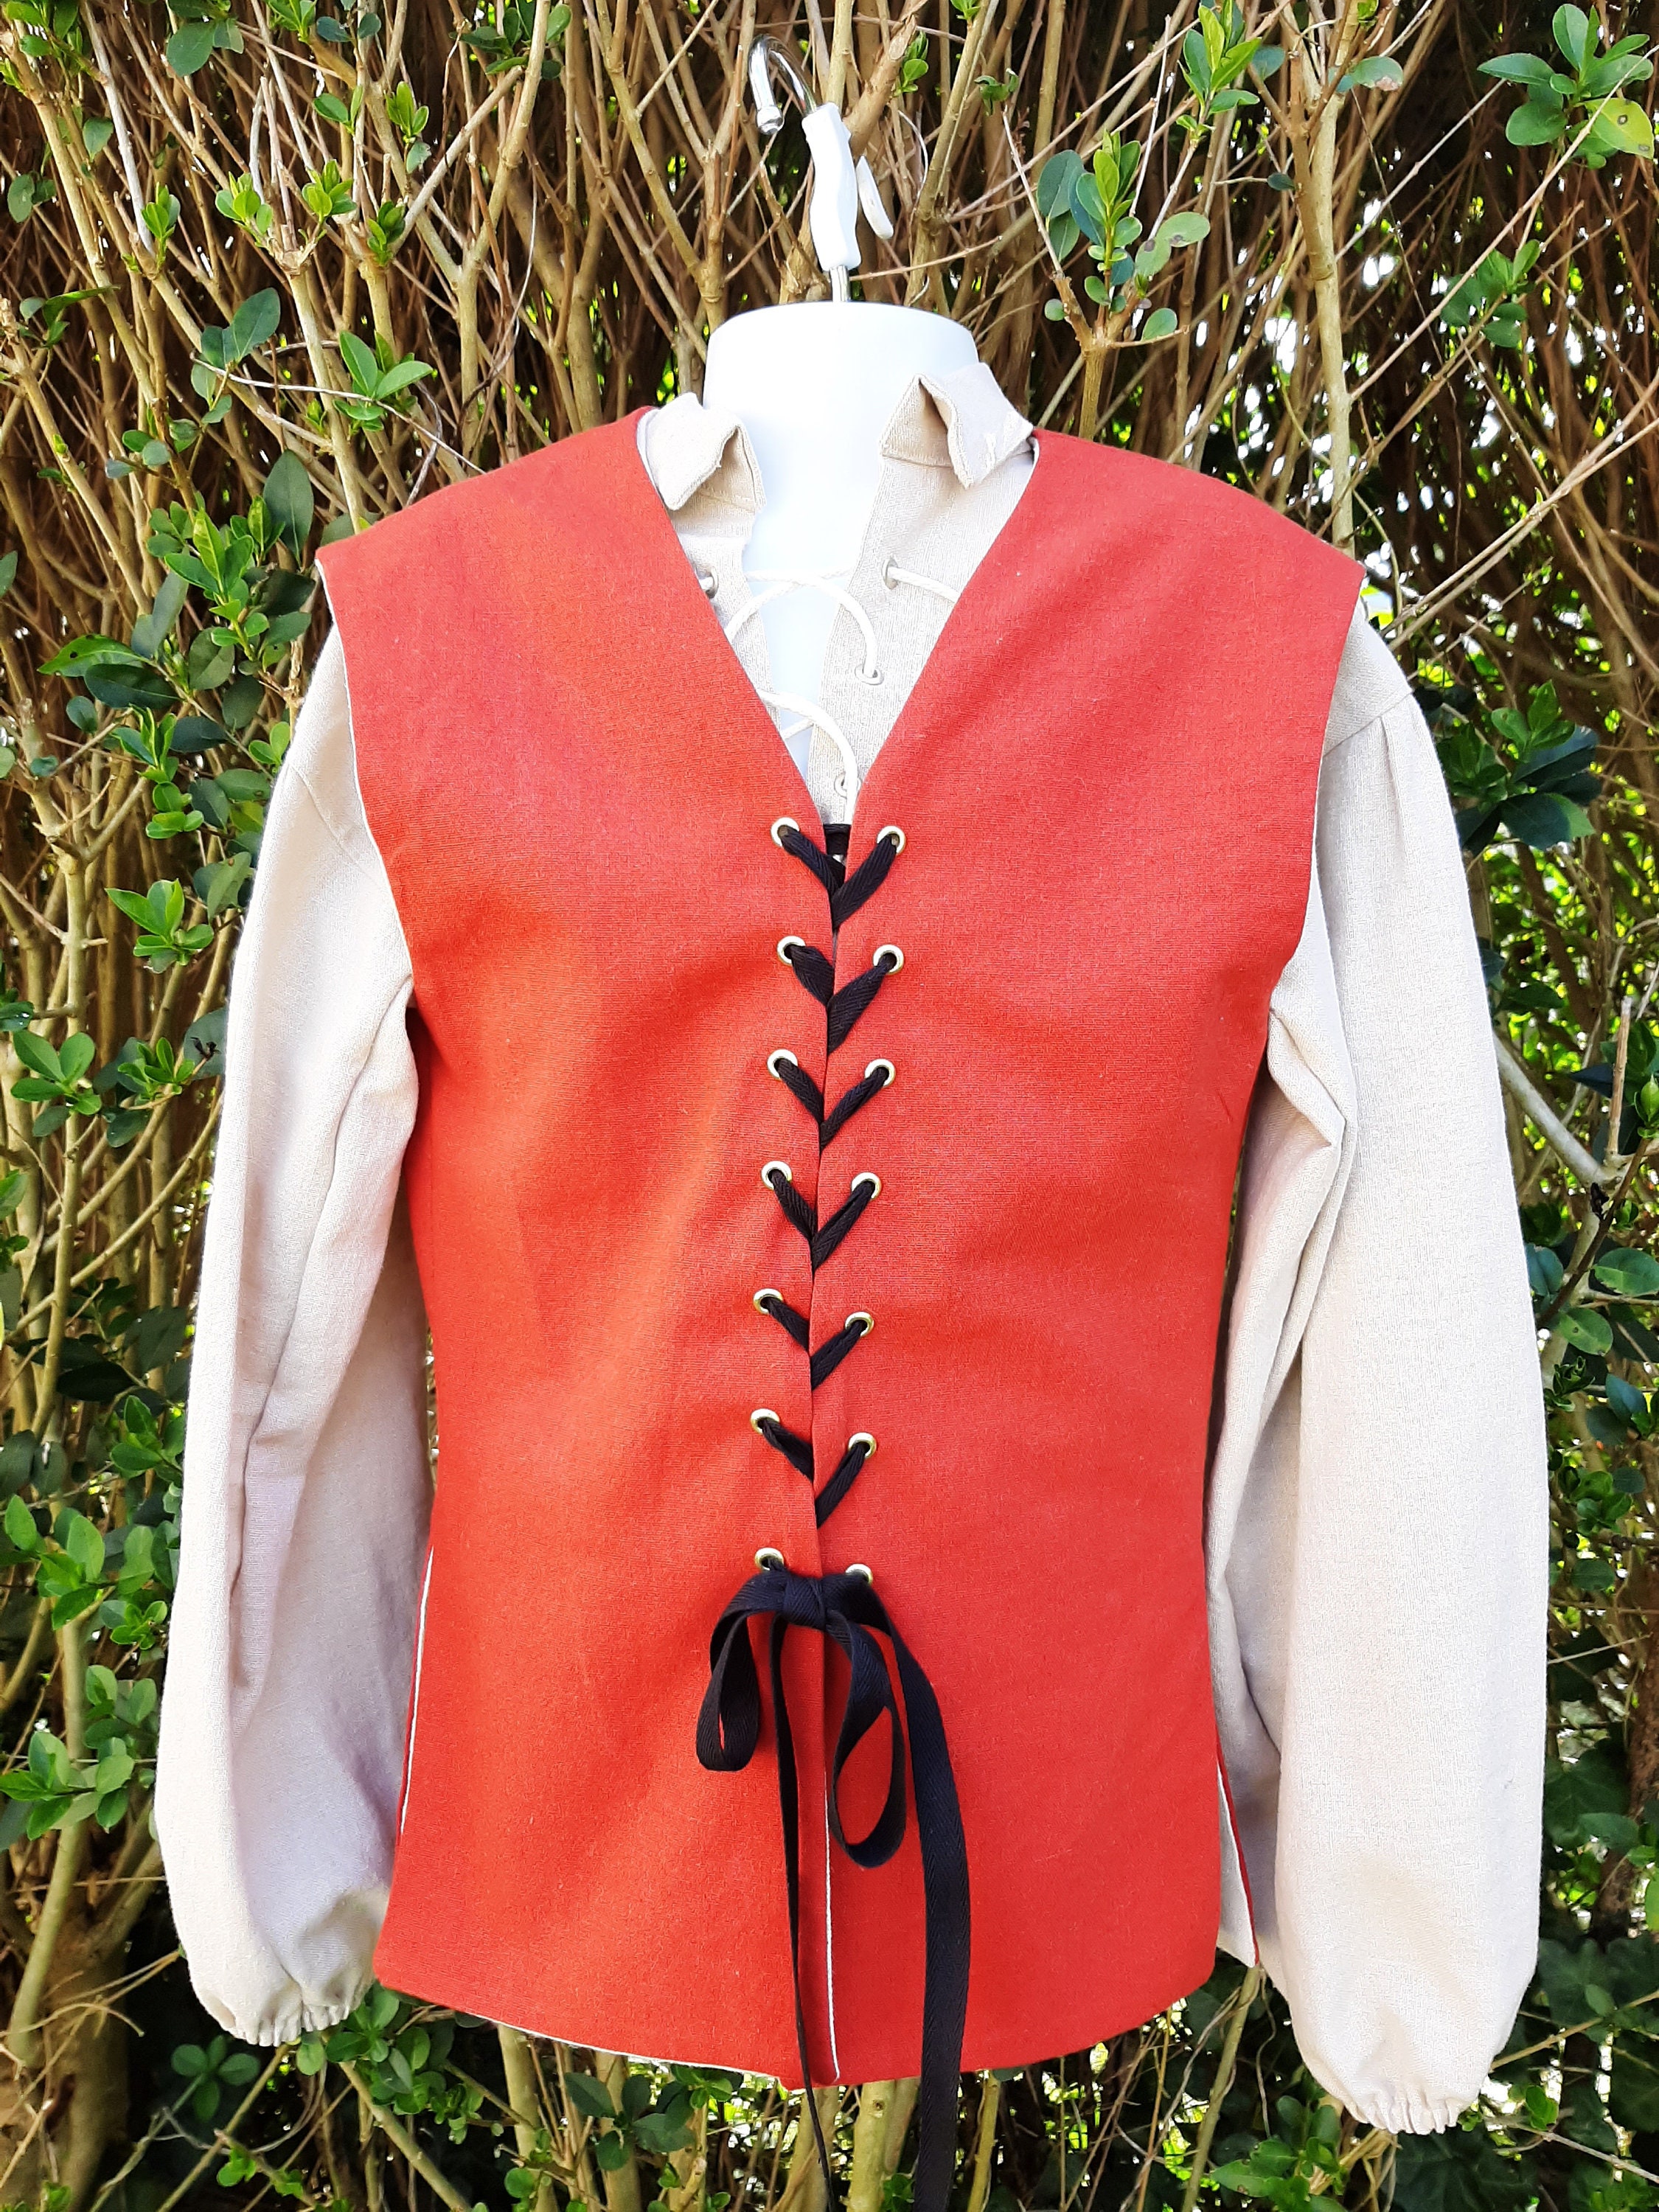 Pirate Boy's Vest Size 9/10 Various Colors New Handmade Renaissance 